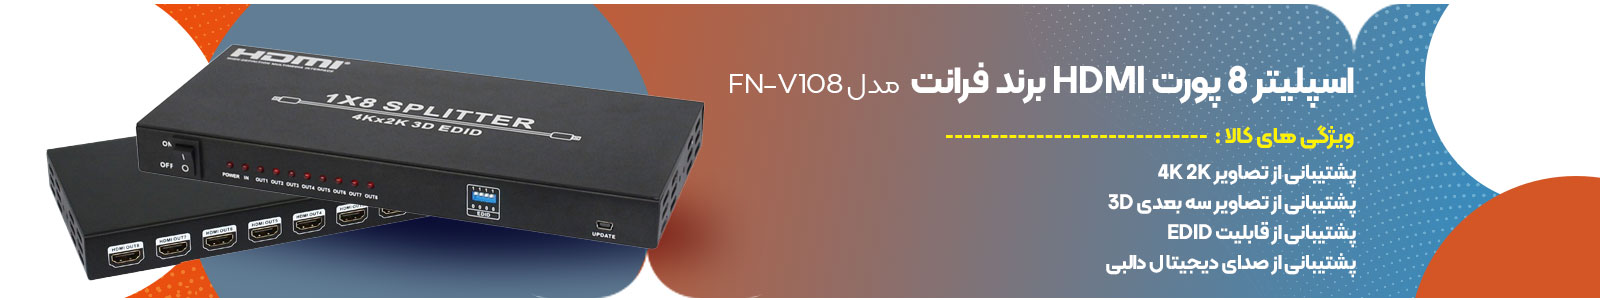 اسپلیتر 8 پورت HDMI برند فرانت مدل FN-V108